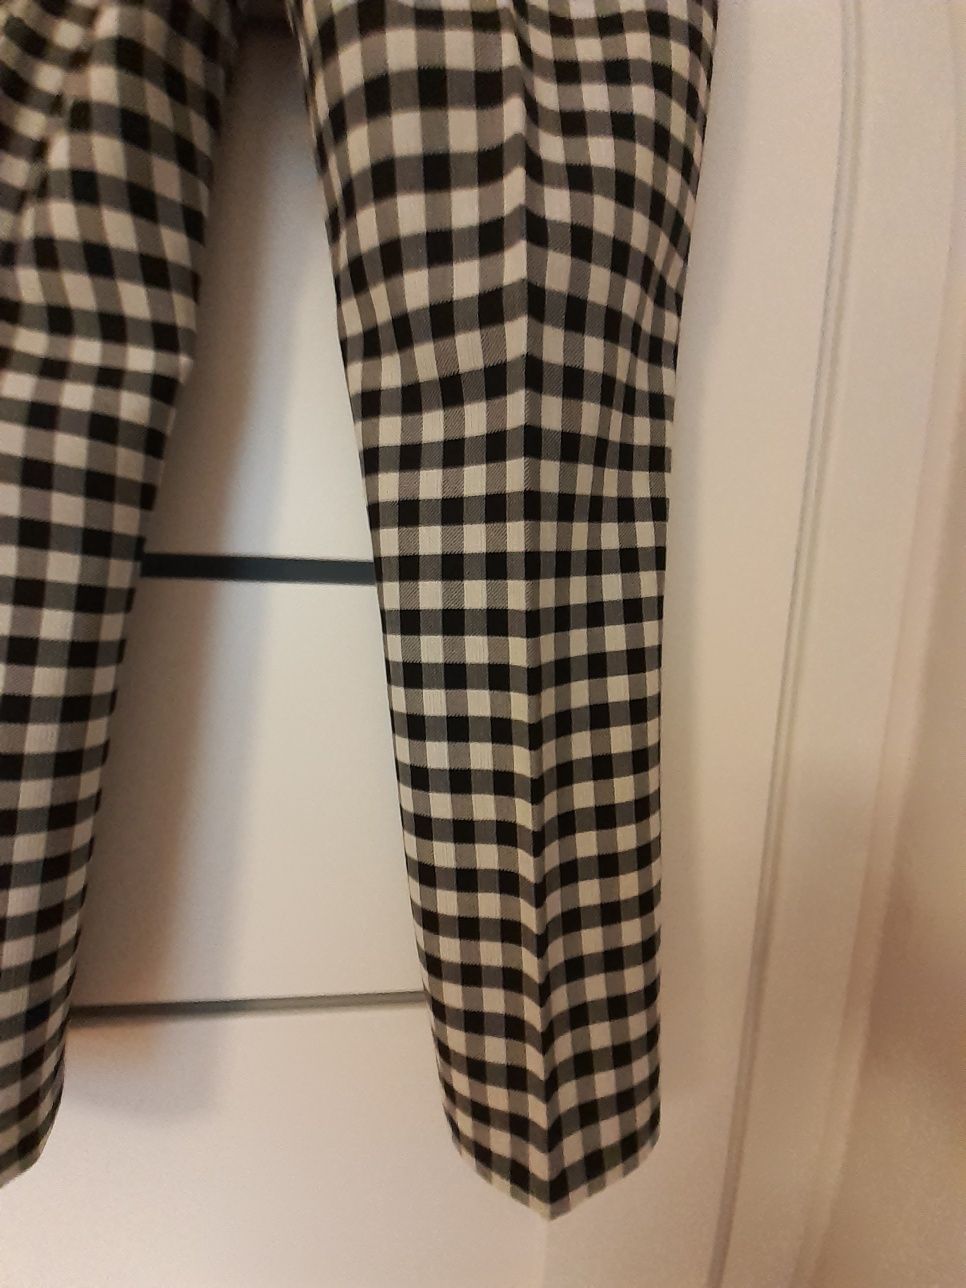 Spodnie cygaretki Zara r. M czarno- biała krateczka